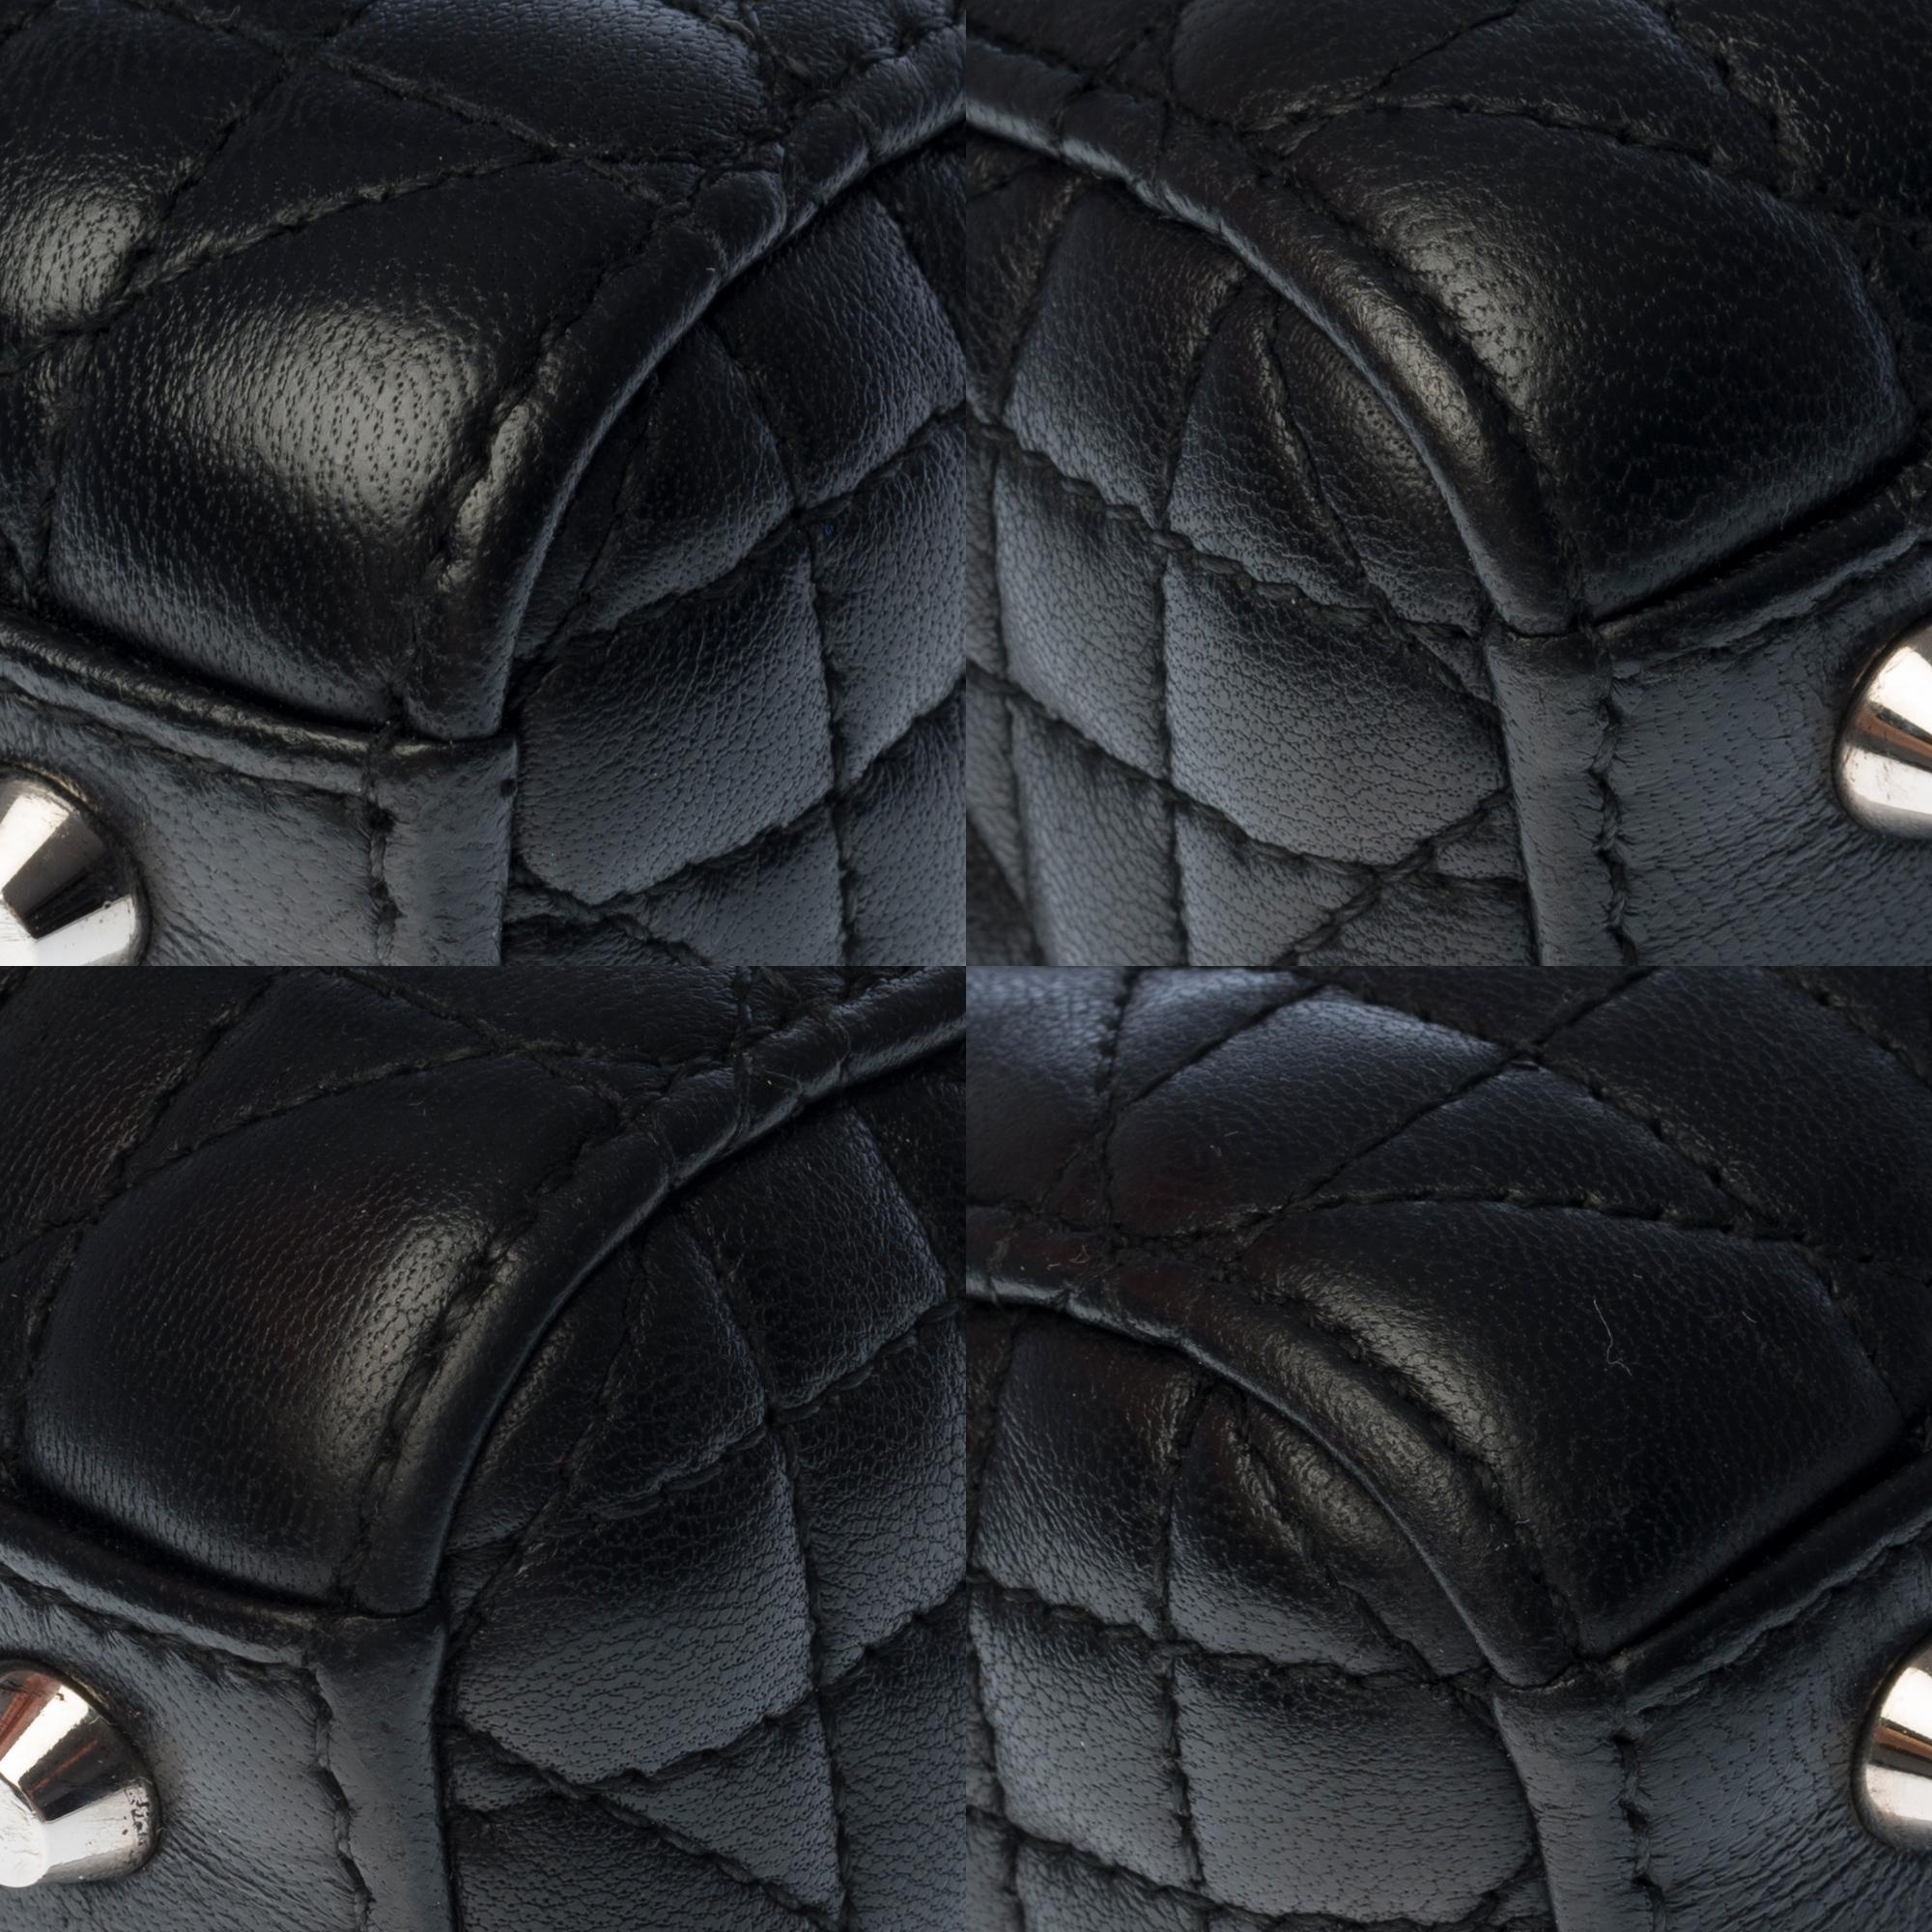  Christian Dior Lady Dior Mini handbag strap in black cannage leather, SHW 2